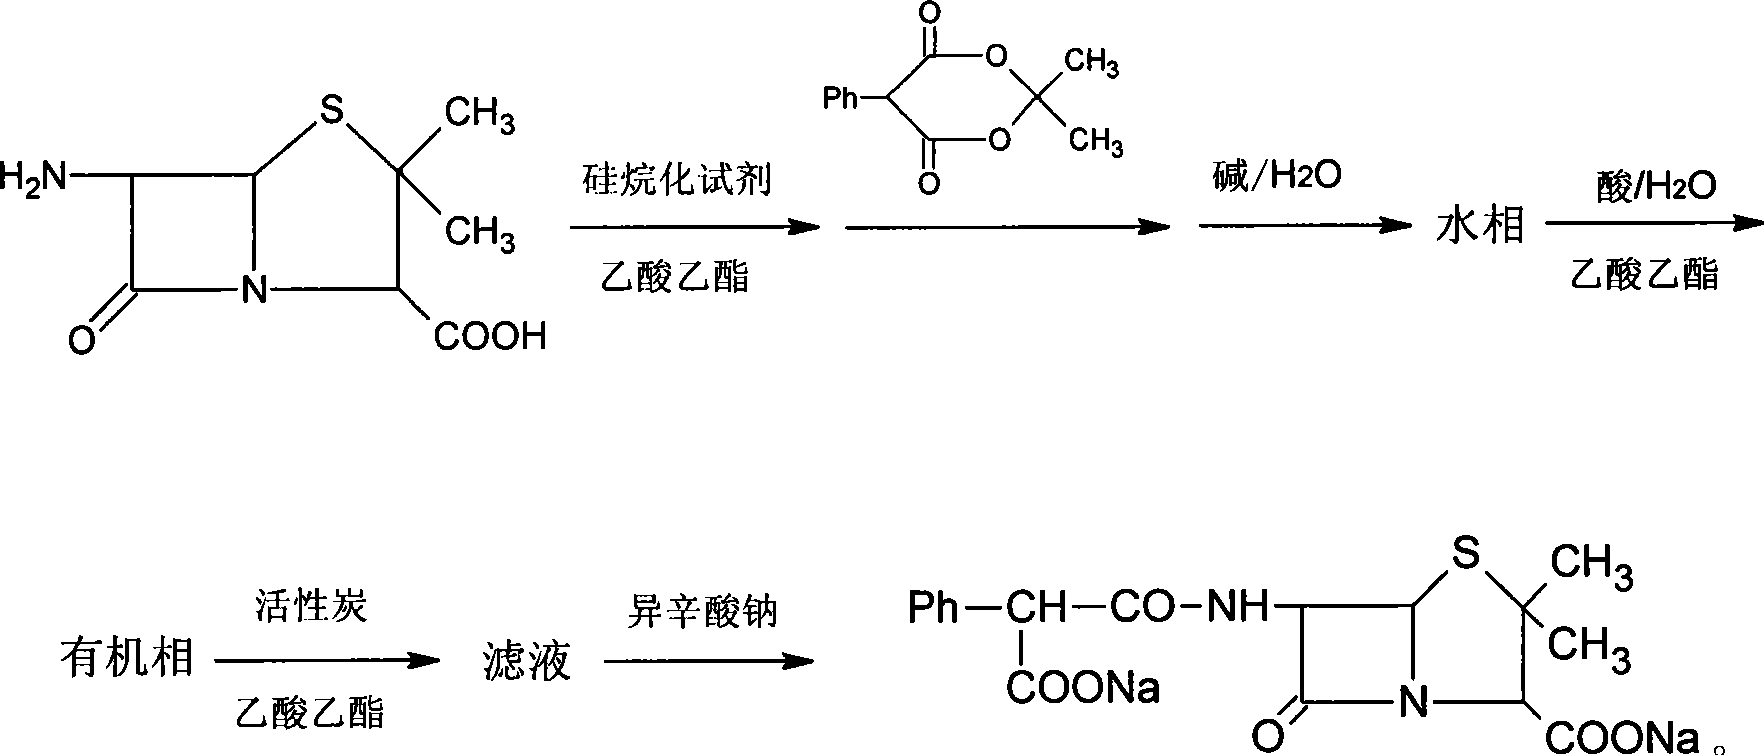 Method for synthesizing carbenicillin sodium